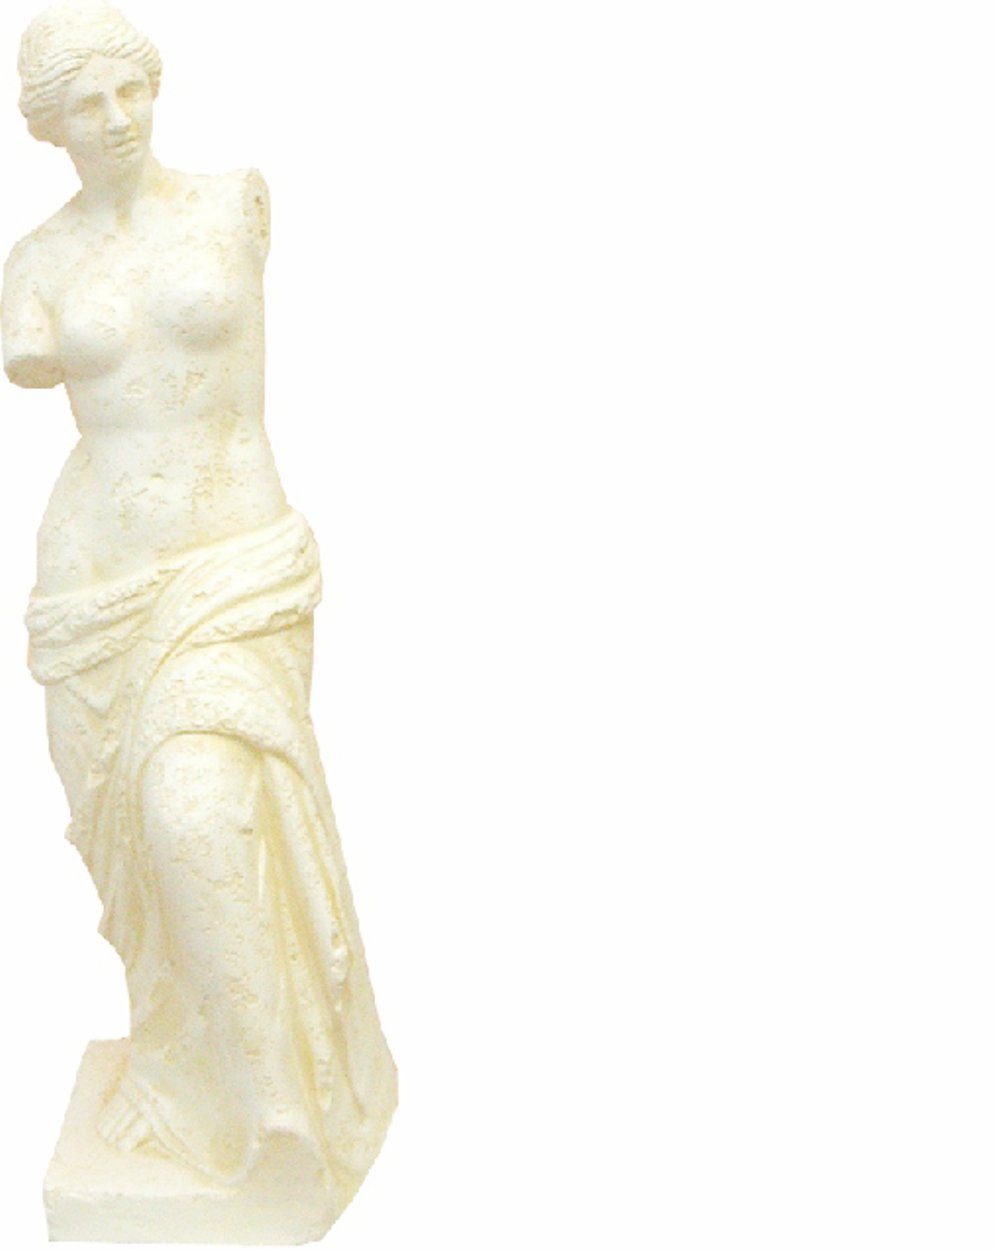 JVmoebel Antik 0330 Stil Figur Design Skulptur Dekoration Griechische Figuren Skulptur